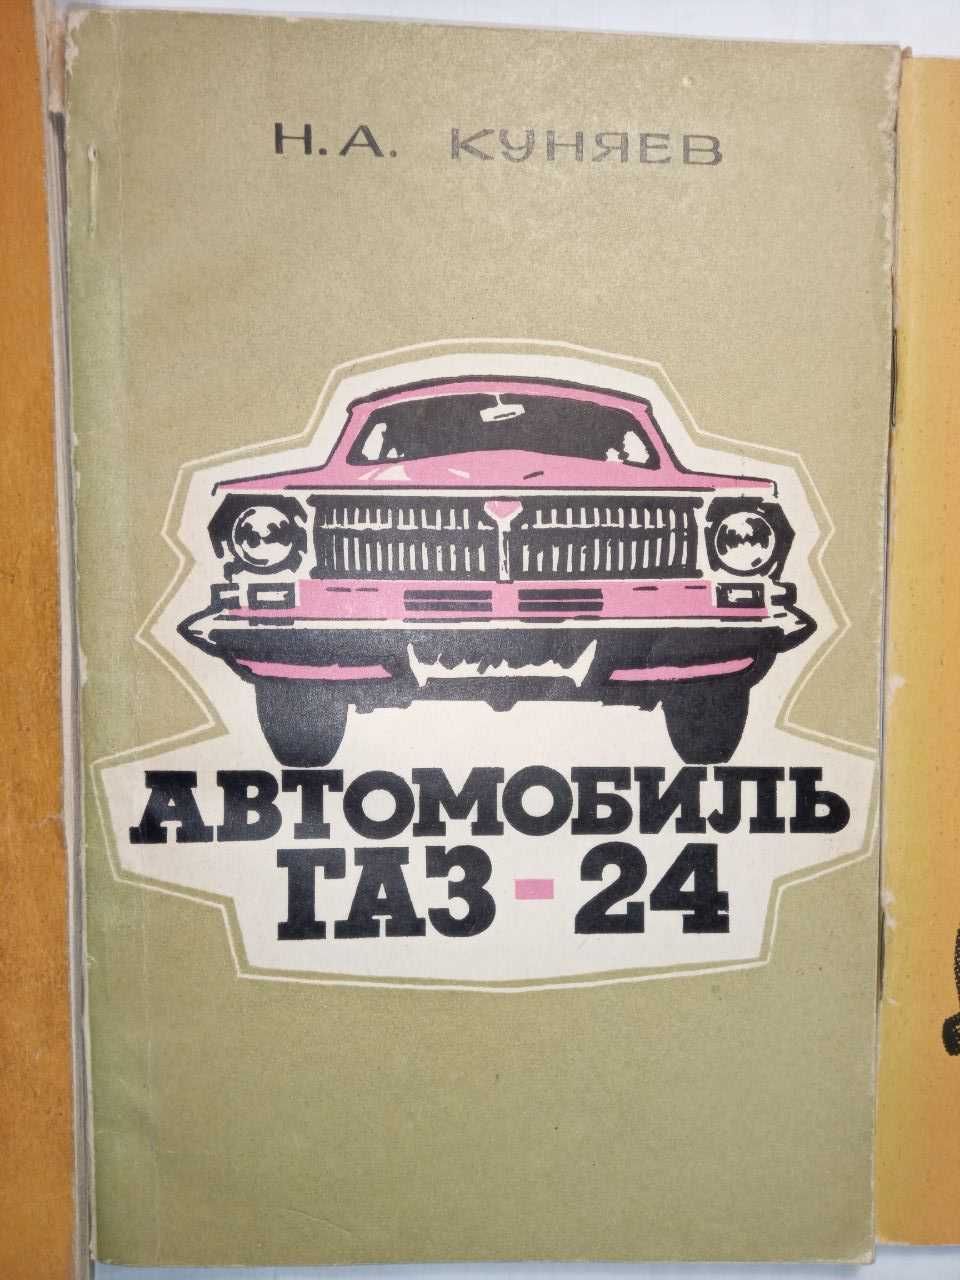 Книги по ремонту и обслуживанию автомобилей ВАЗ, ГАЗ-24 (5шт).